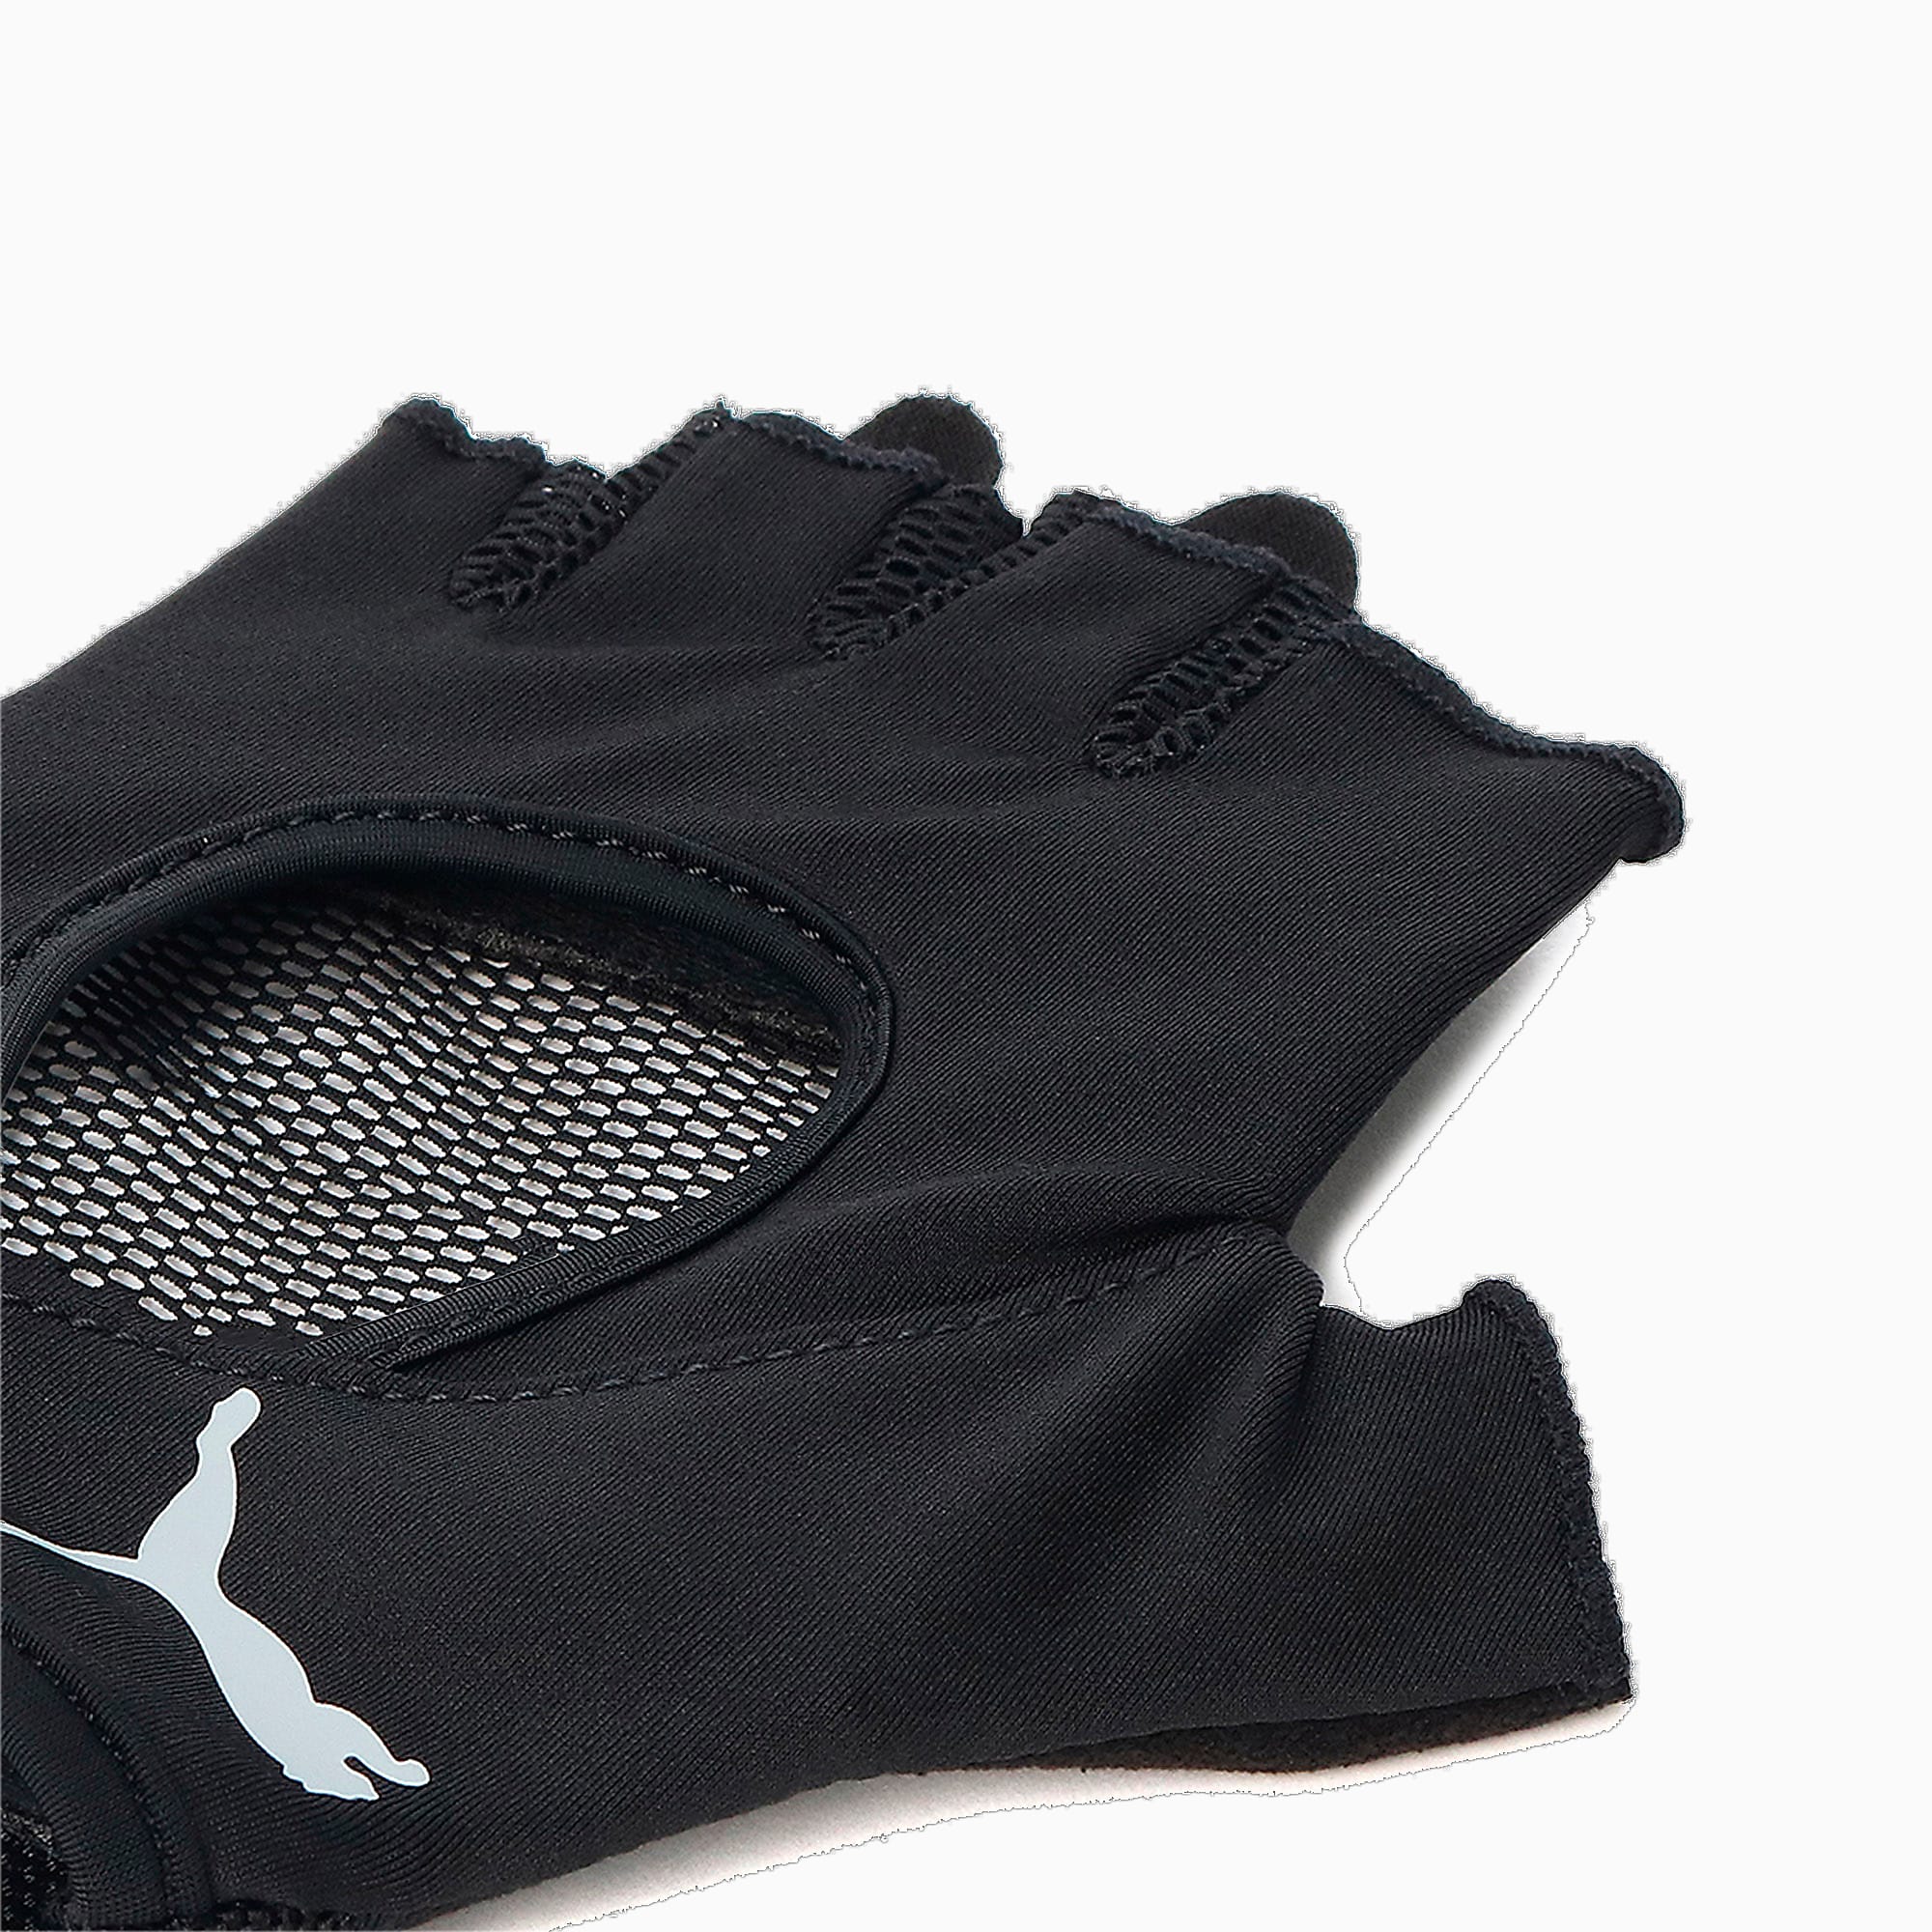 PUMA Gym Women's Training Gloves, Black, Size S, Accessories